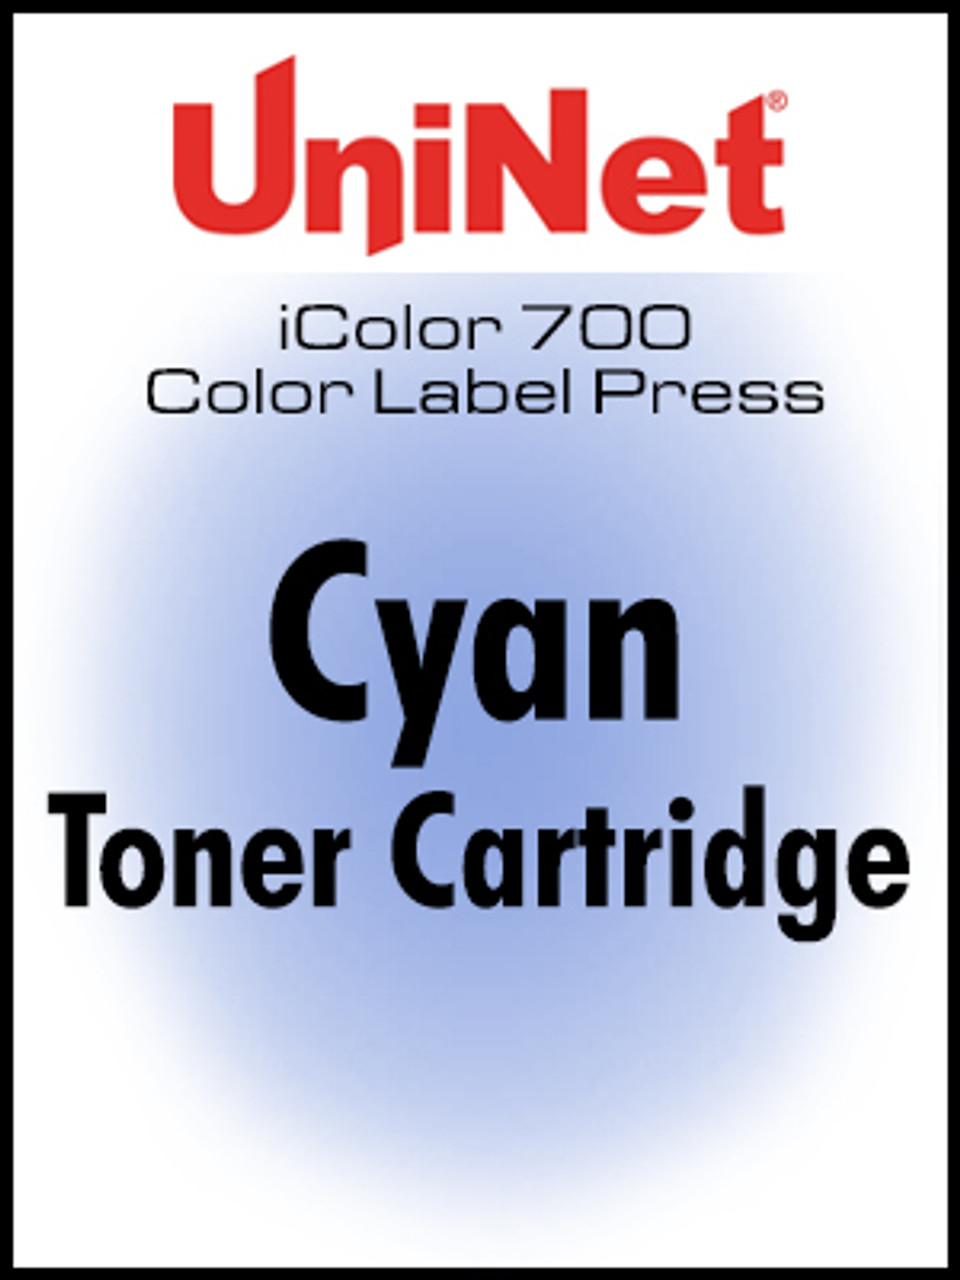 iColor 700 Digital Press Cyan toner cartridge